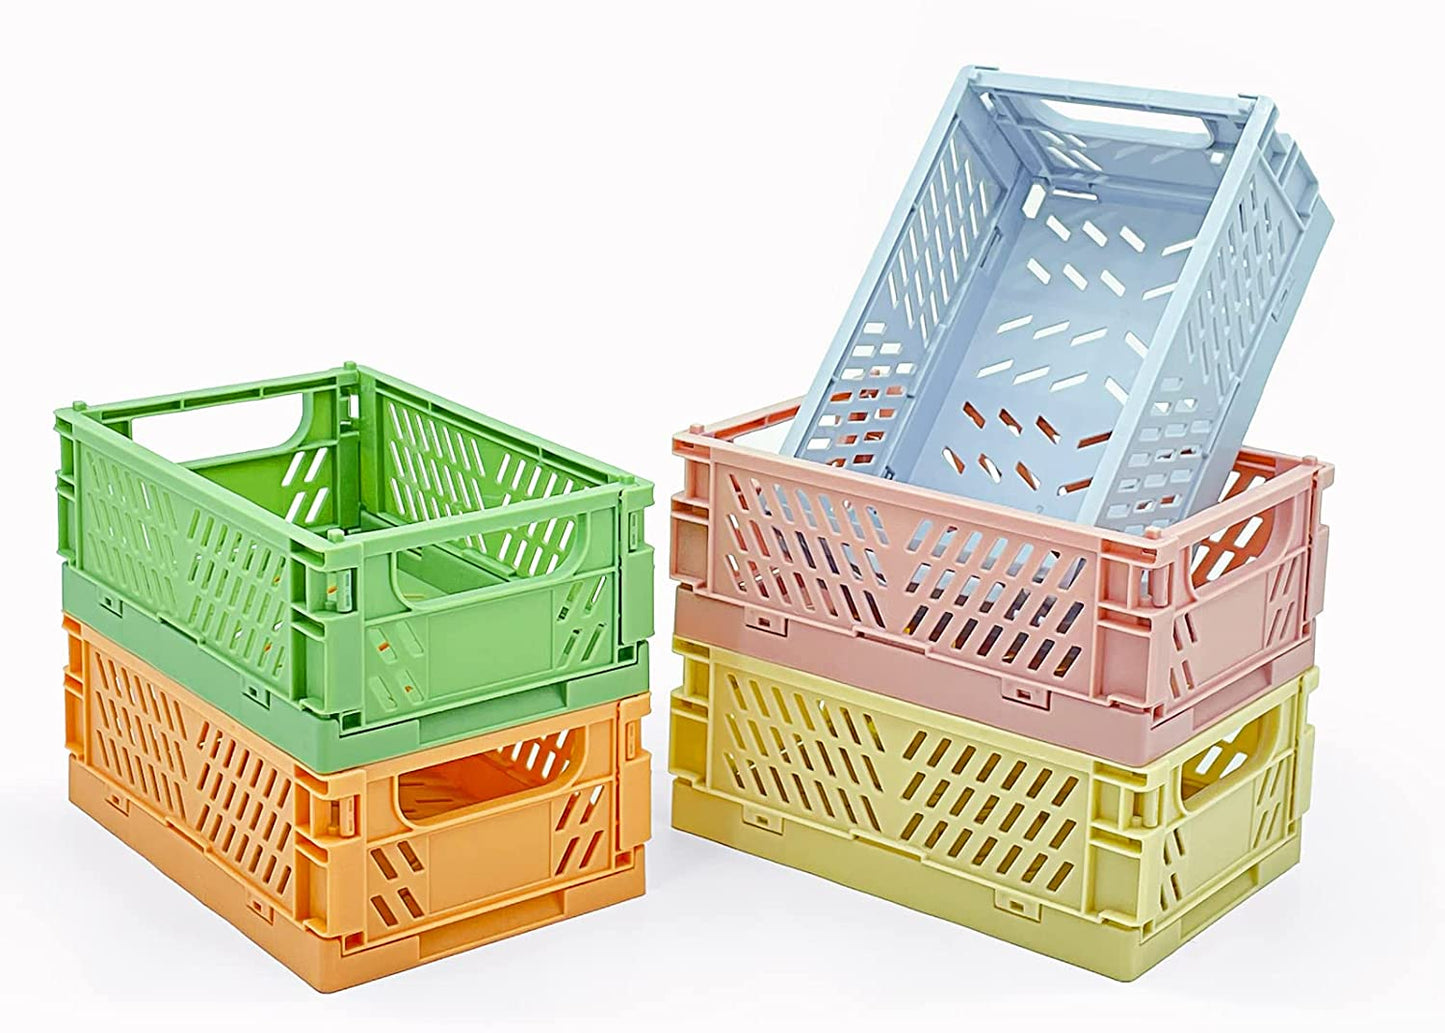 do plastic milk crates float or sink?